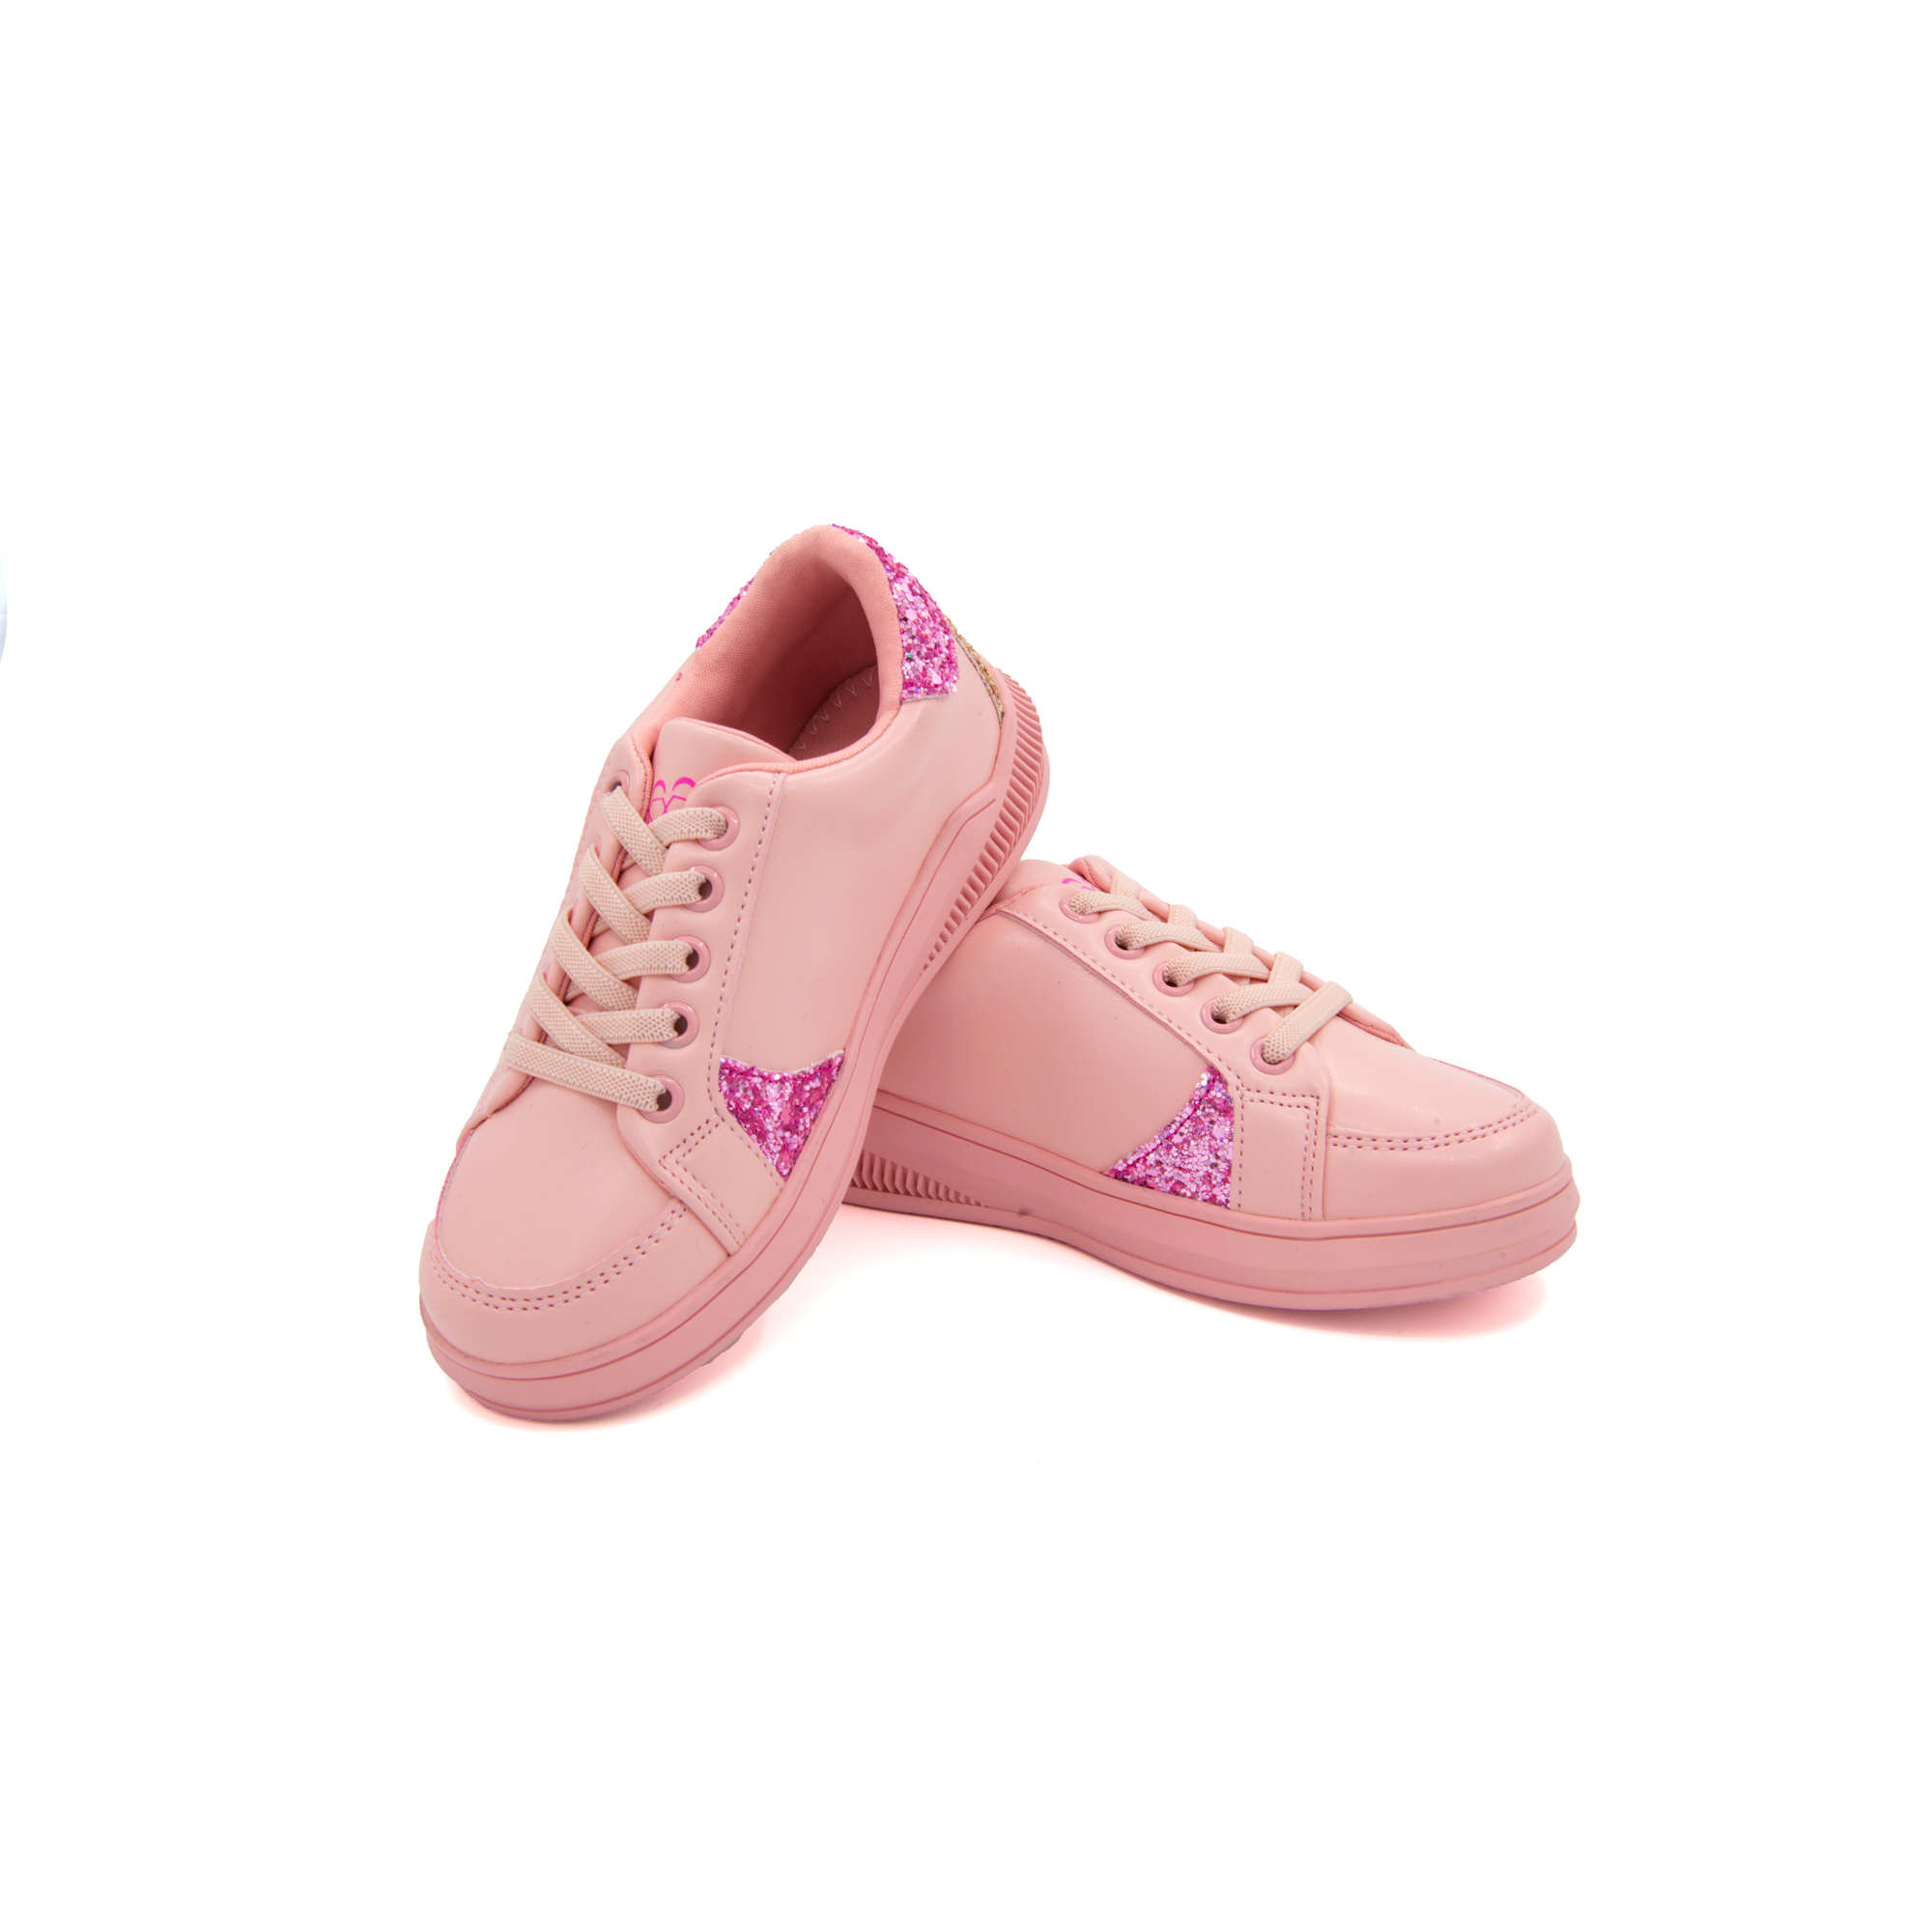 Giày Sneaker Bé Gái Đi Học Cổ Thấp Crown Space UK Active Trẻ em Cao Cấp CRUK257 Siêu Nhẹ Êm Size 26-35/3-12 Tuổi